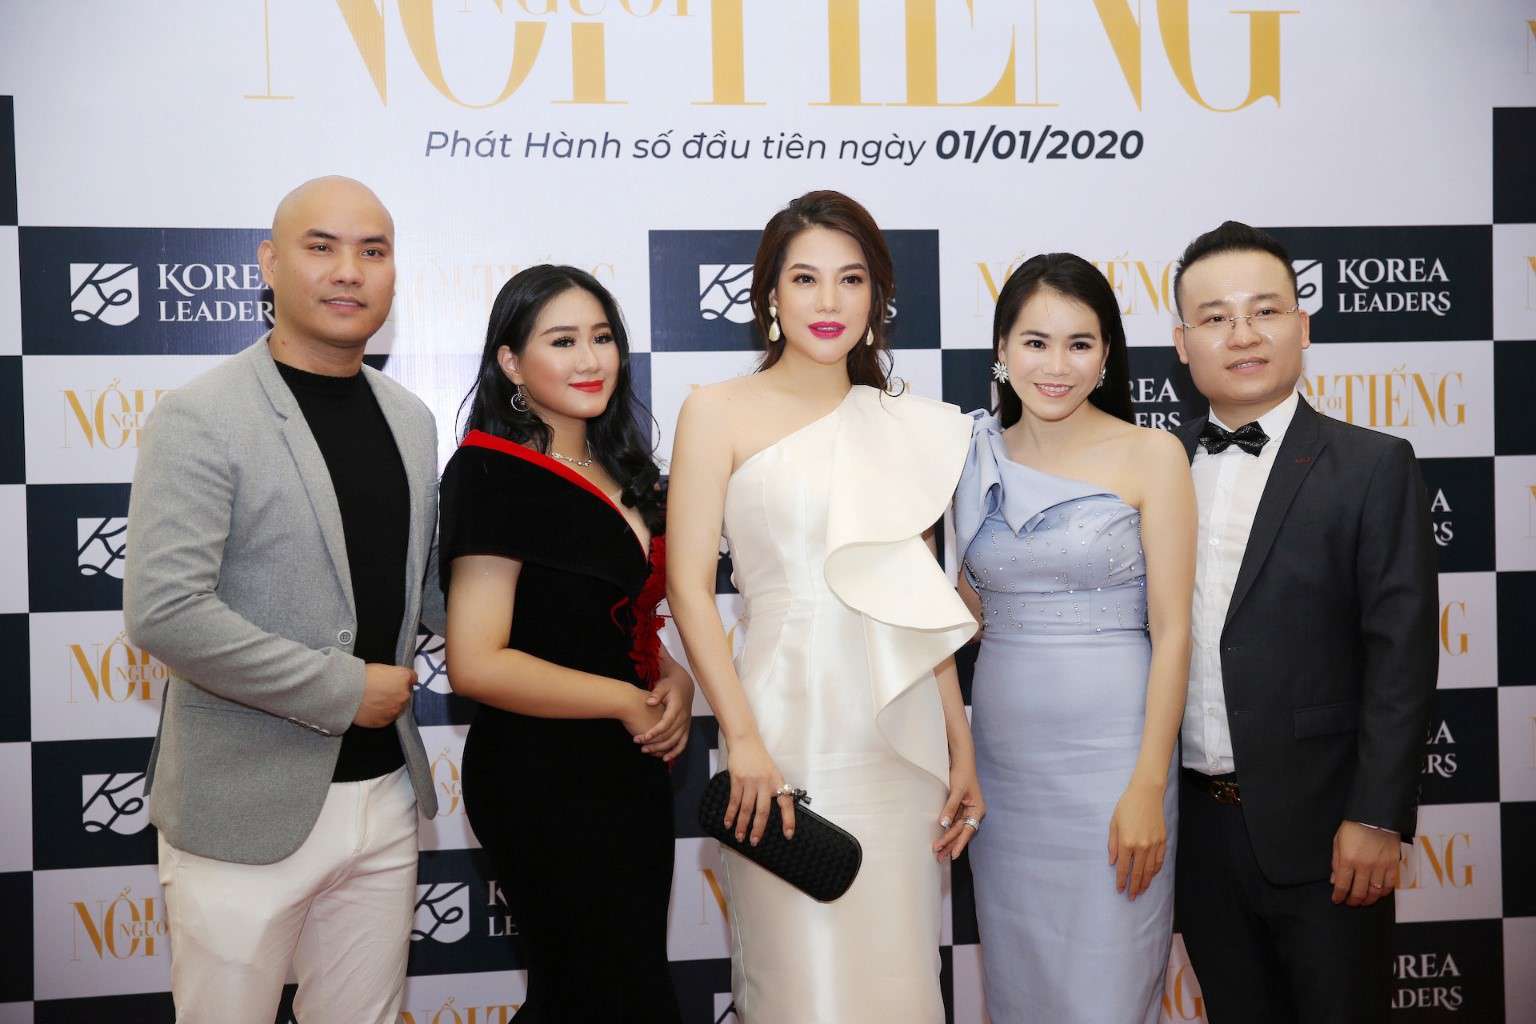 “Ngôi sao châu Á” – Diễn viên Trương Ngọc Ánh được mời làm Giám khảo Hoa hậu Việt Hoàn vũ năm 2020 tại Hàn Quốc